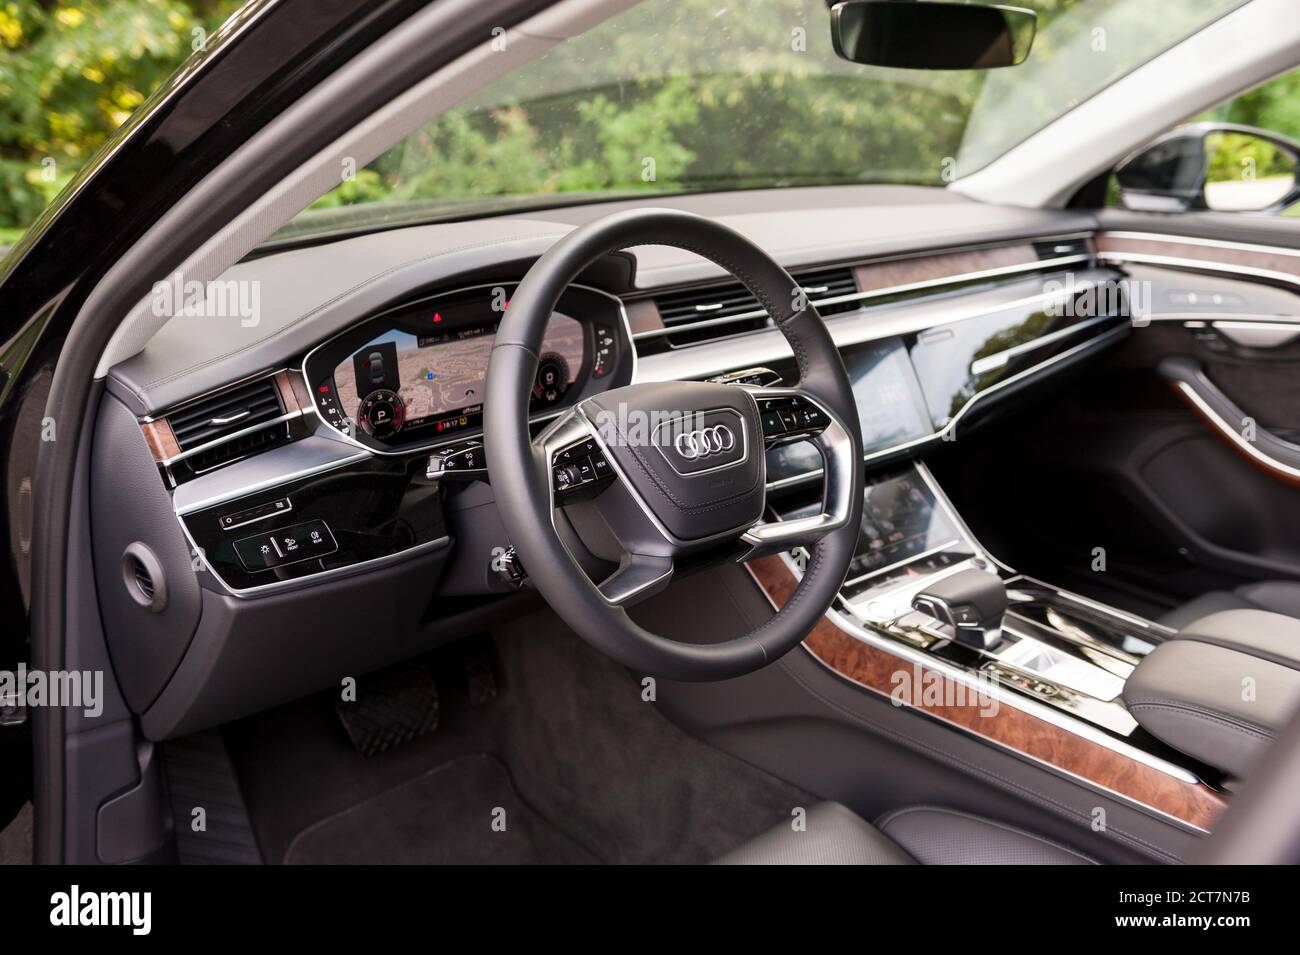 New 2018 Audi A8 50 TDI quattro interior dashboard Stock Photo - Alamy